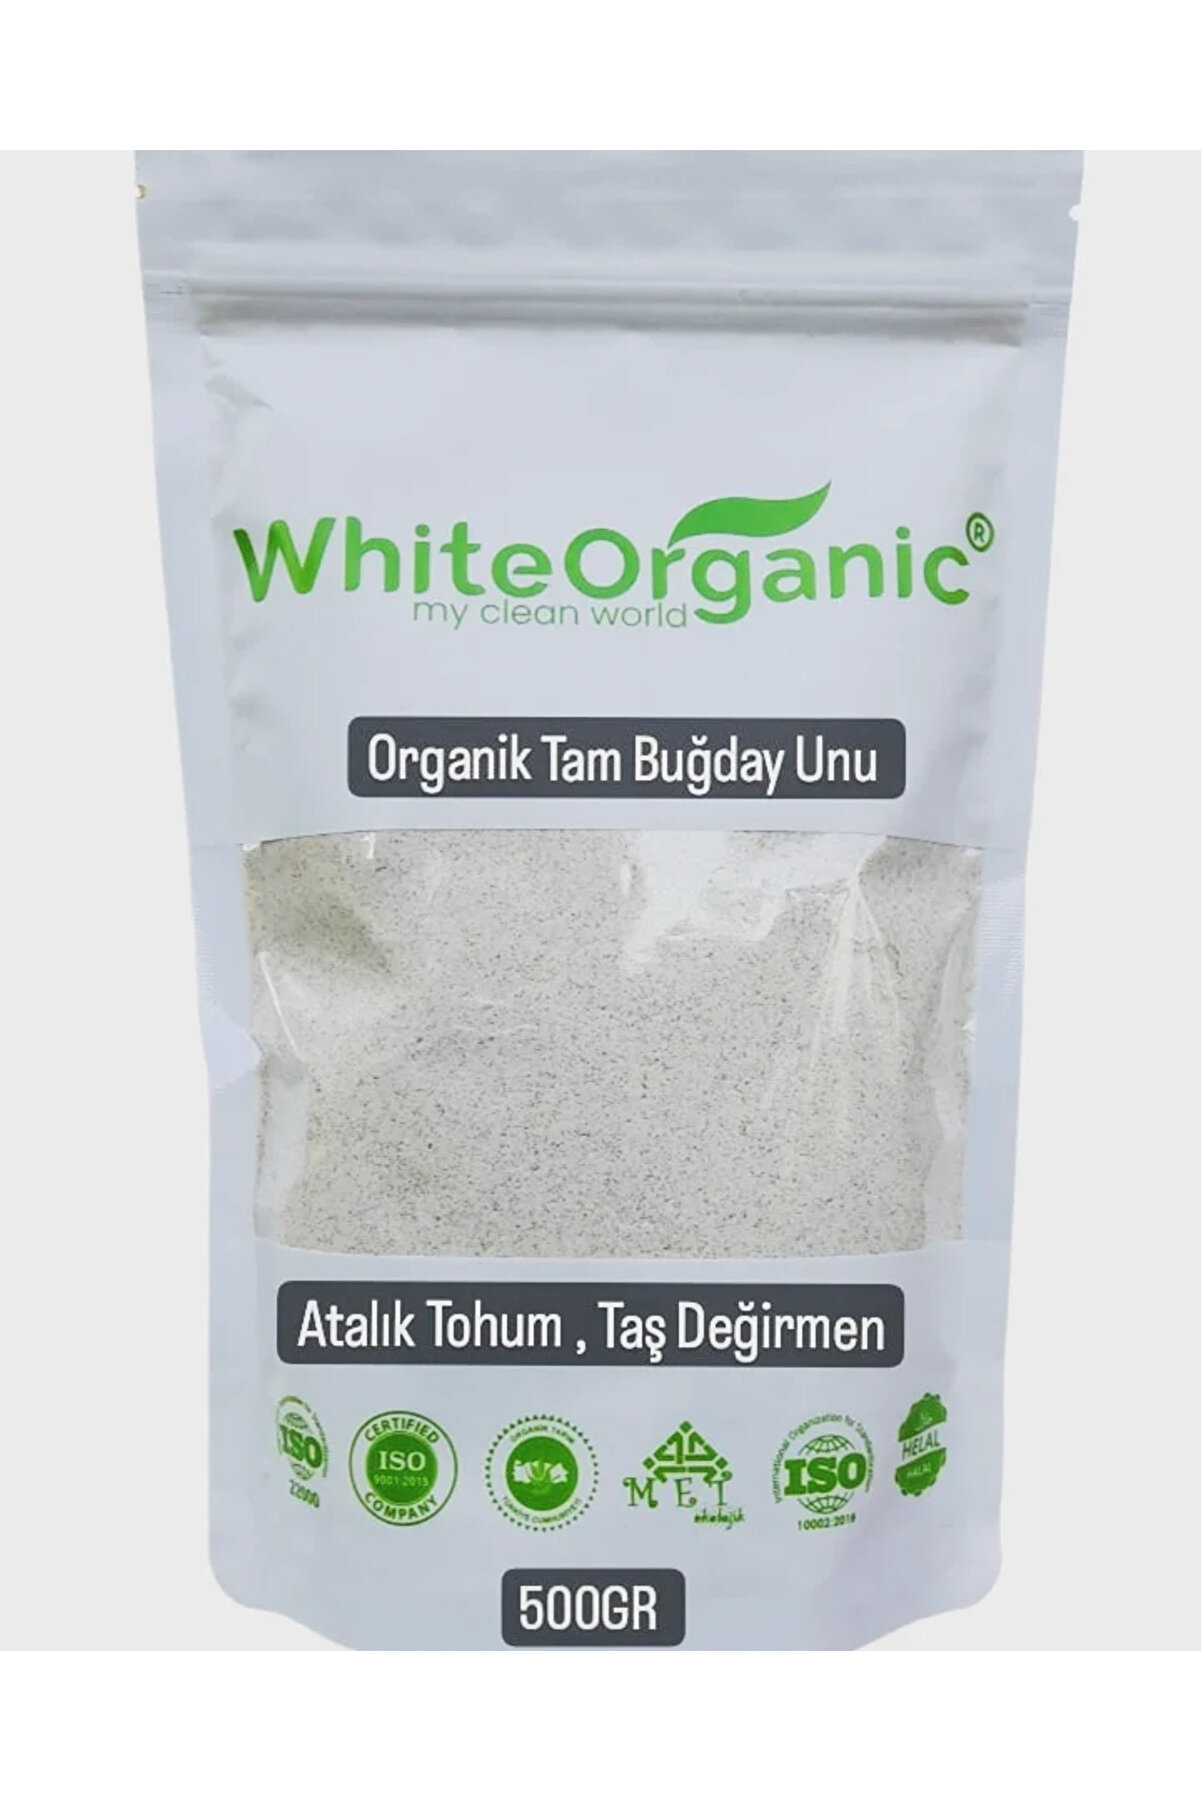 White Organic Organik Tam Buğday Unu 500 Gr Atalık Tohum Taş Değirmen Helal Belgeli